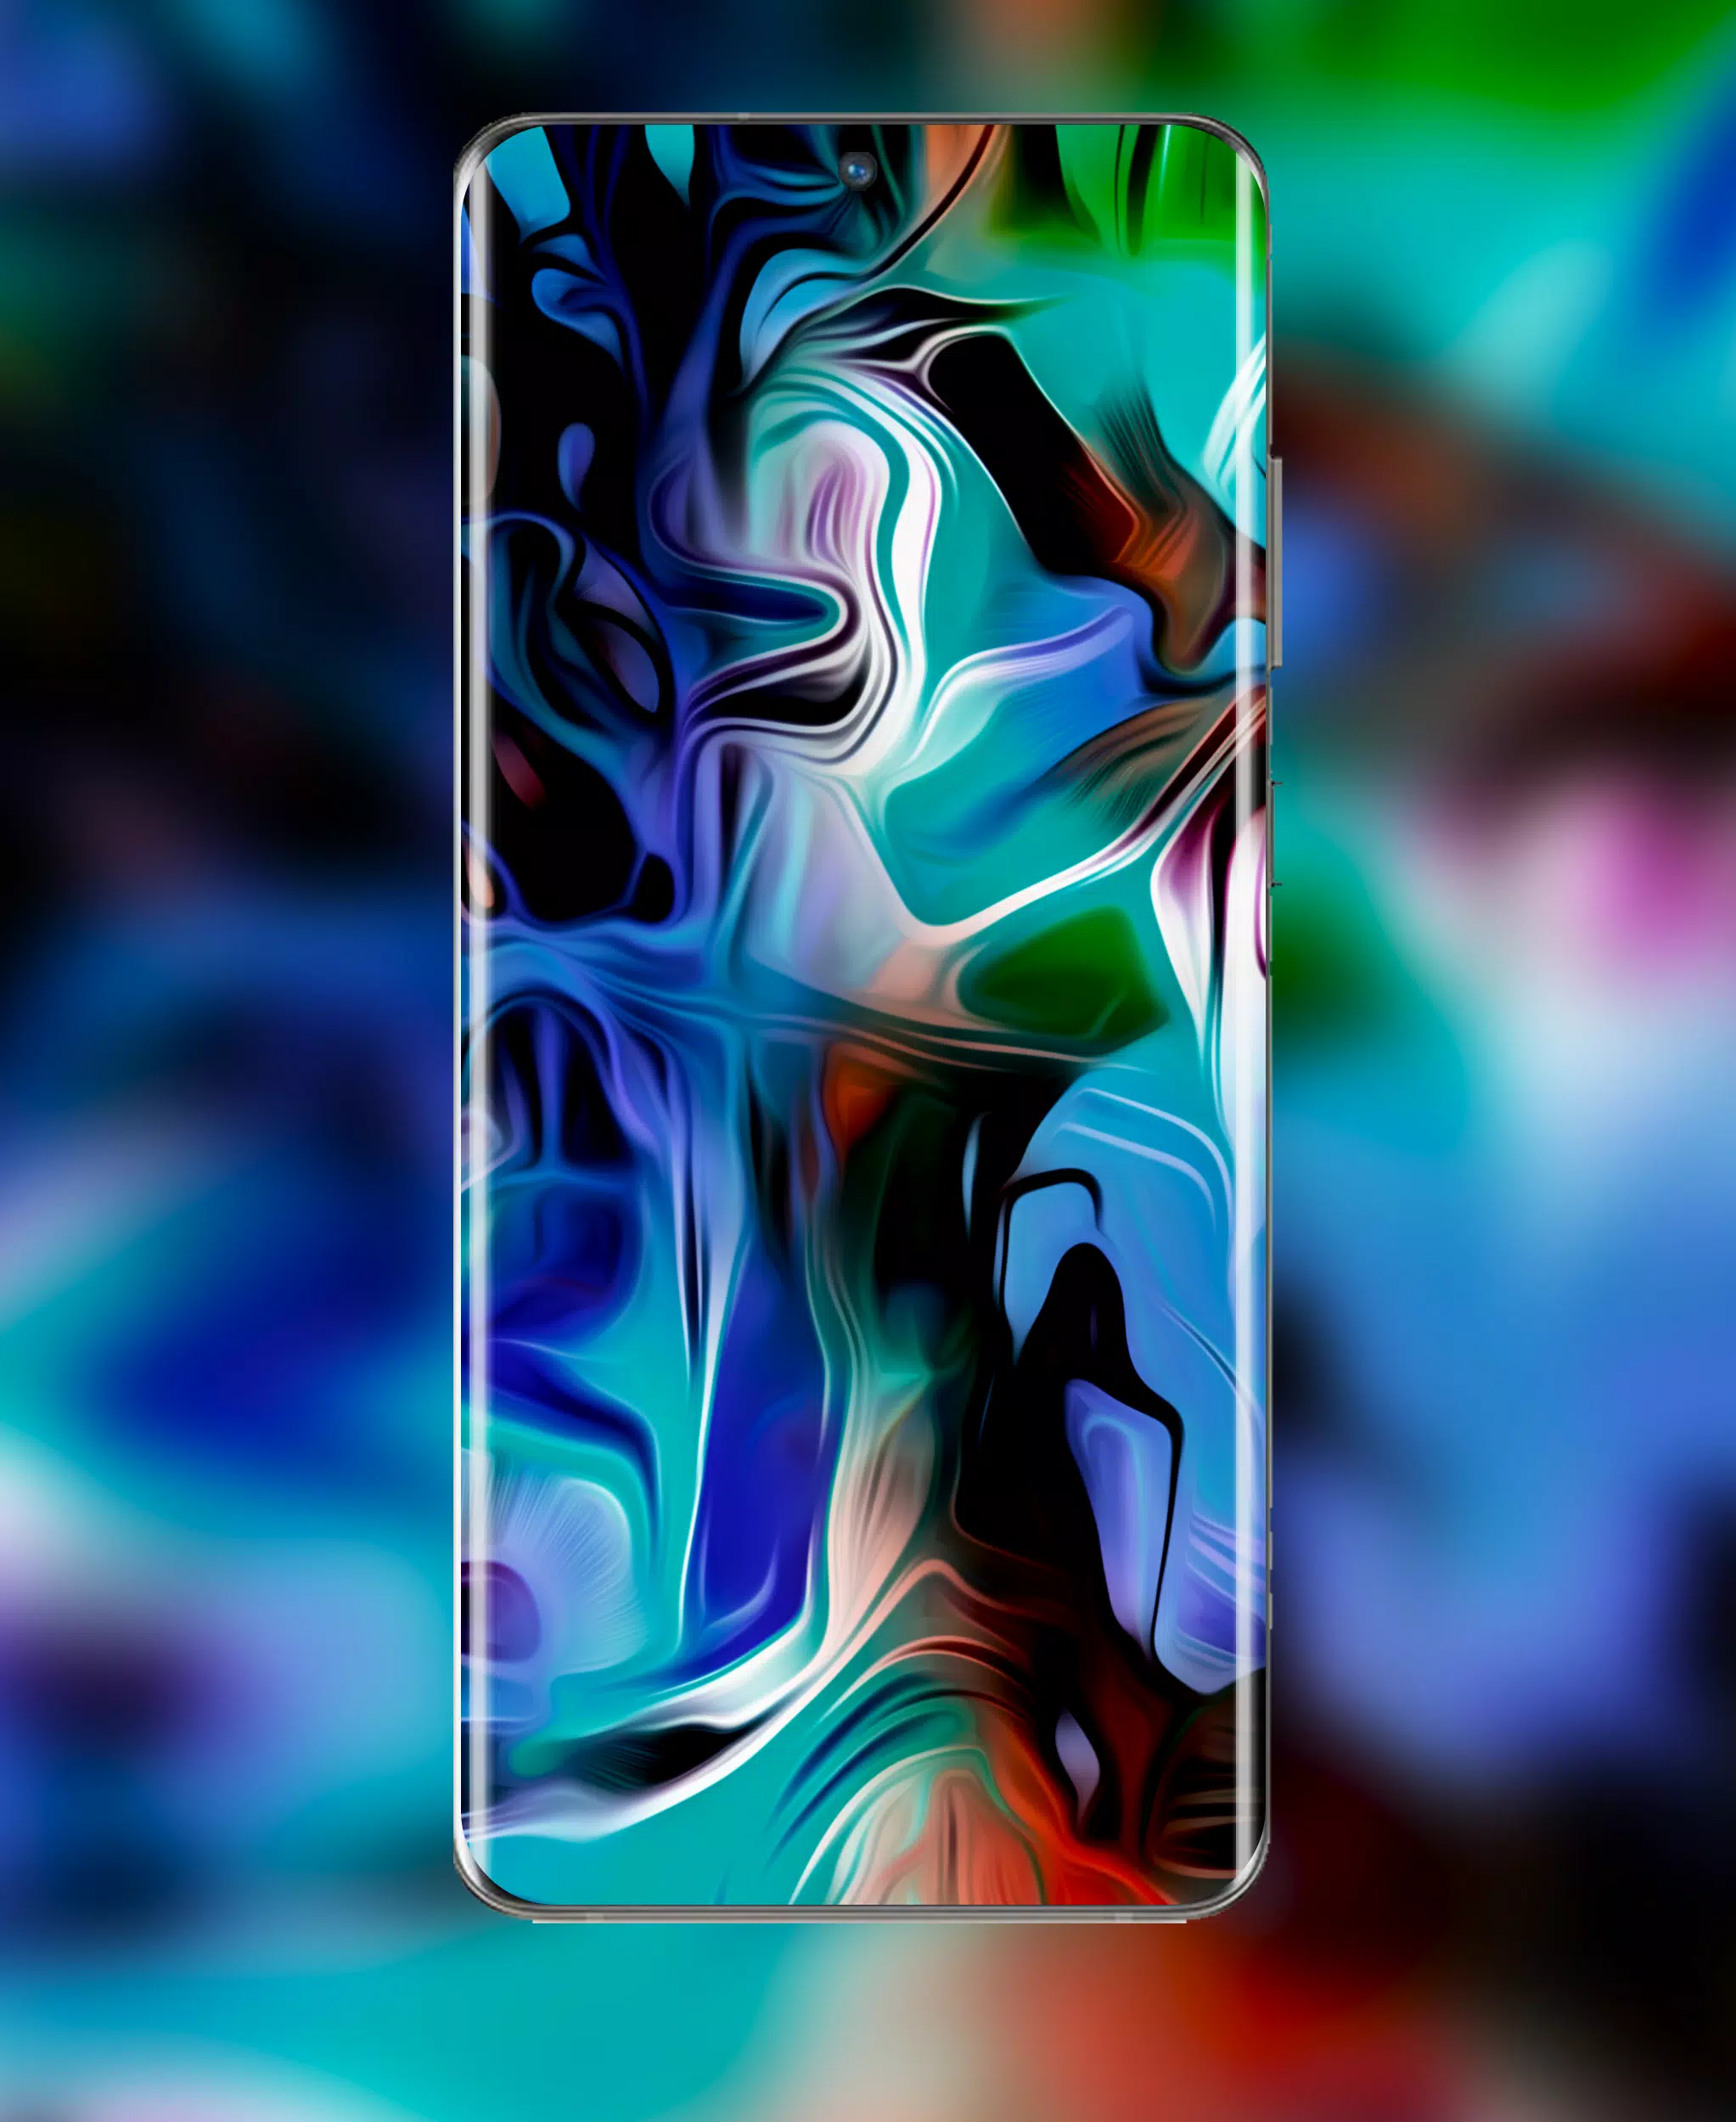 Với hình nền Galaxy S22 Ultra Wallpaper, bạn sẽ được trải nghiệm vẻ đẹp đỉnh cao của thiết bị này. Với độ nét cao và tương phản màu sắc tuyệt vời, bạn sẽ có một bức tranh đẹp ngất ngây trên màn hình điện thoại của mình.